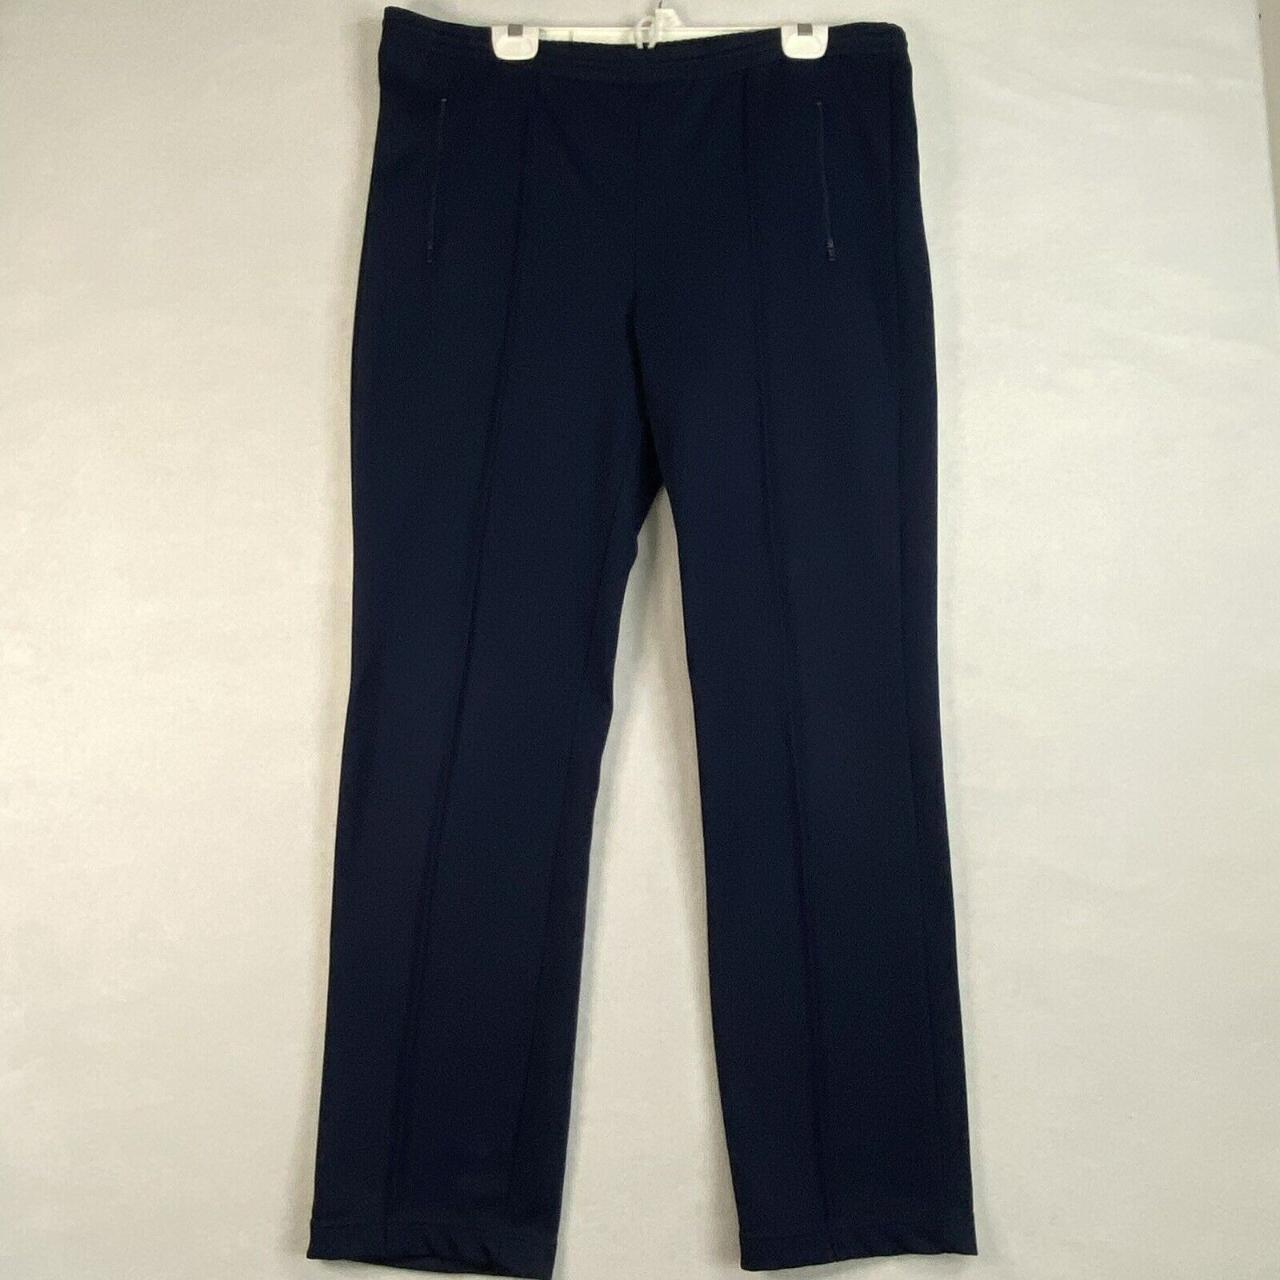 Vintage Nike Athletic Pants Mens Sz L Blue Zip... - Depop